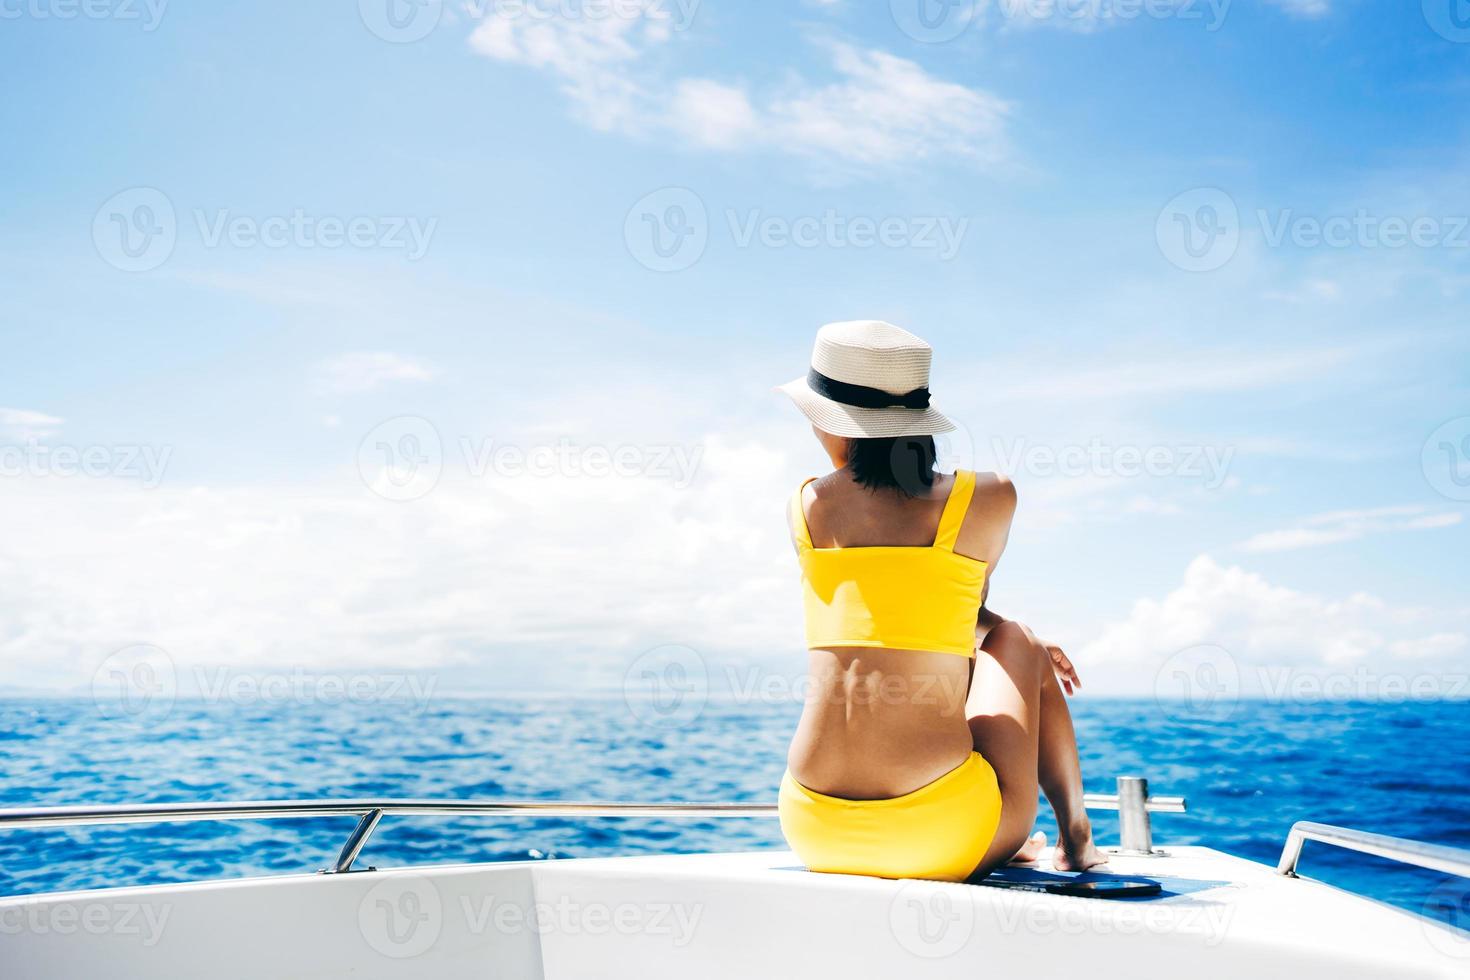 junge erwachsene reisende frau sitzen auf dem segelboot mit summe blauem himmel und meer foto